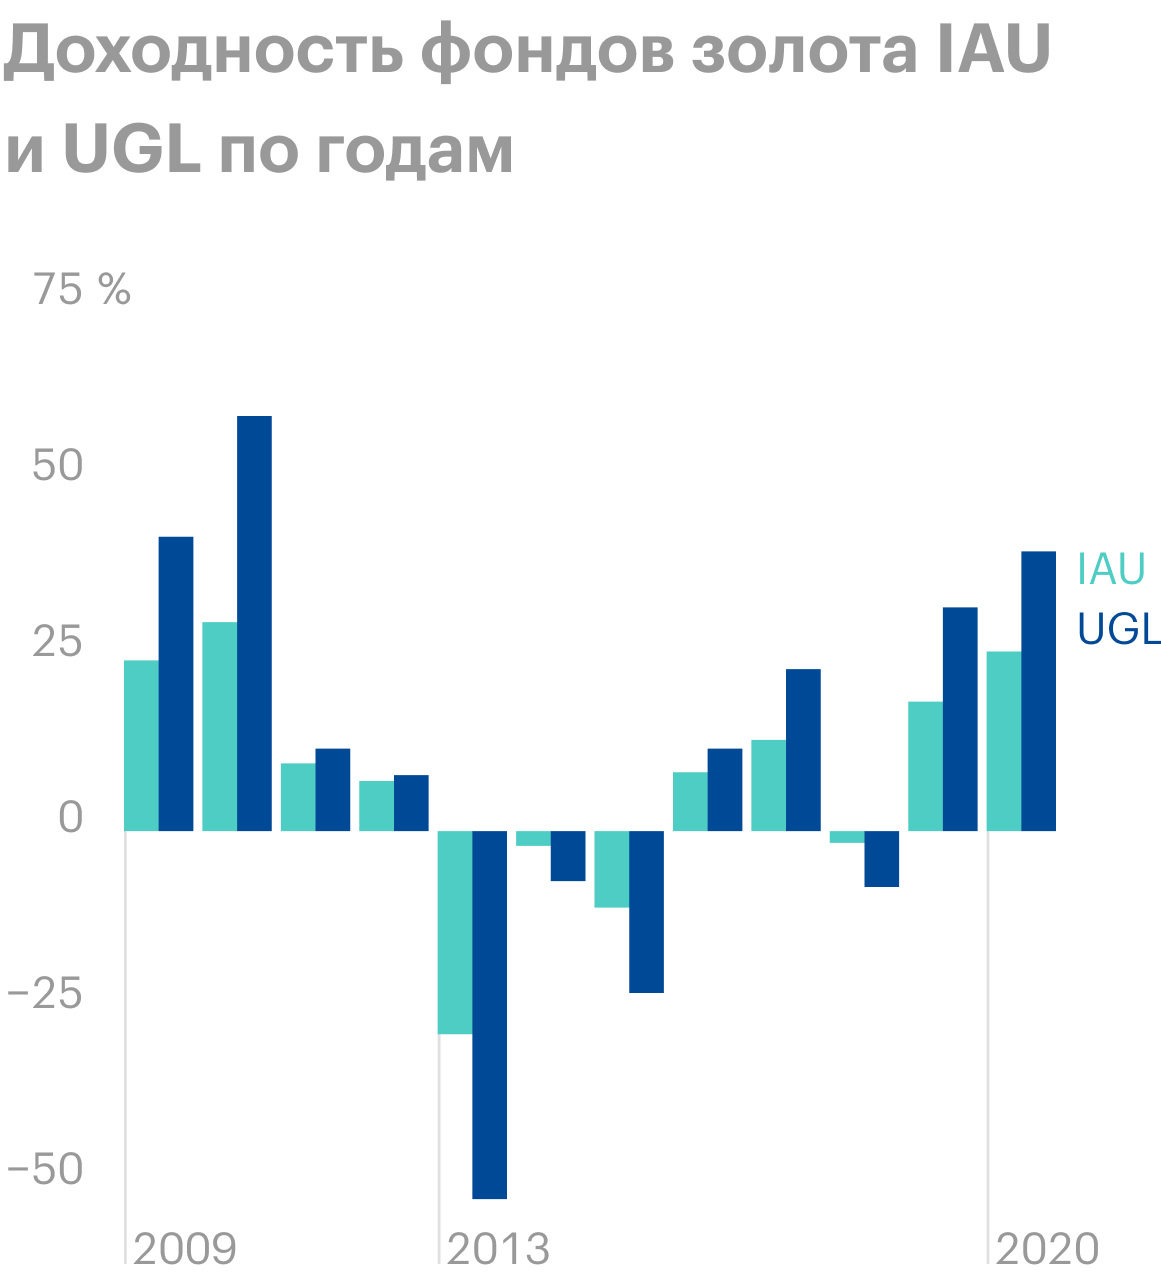 Не во все годы доходность фонда золота UGL, имеющего плечо х2, в два&nbsp;раза отличалась от доходности обычного фонда золота IAU. Например, по итогам 2012&nbsp;года результат был почти одинаковым, а в 2018&nbsp;году UGL упал в четыре раза сильнее. Источник: Portfolio&nbsp;Visualizer